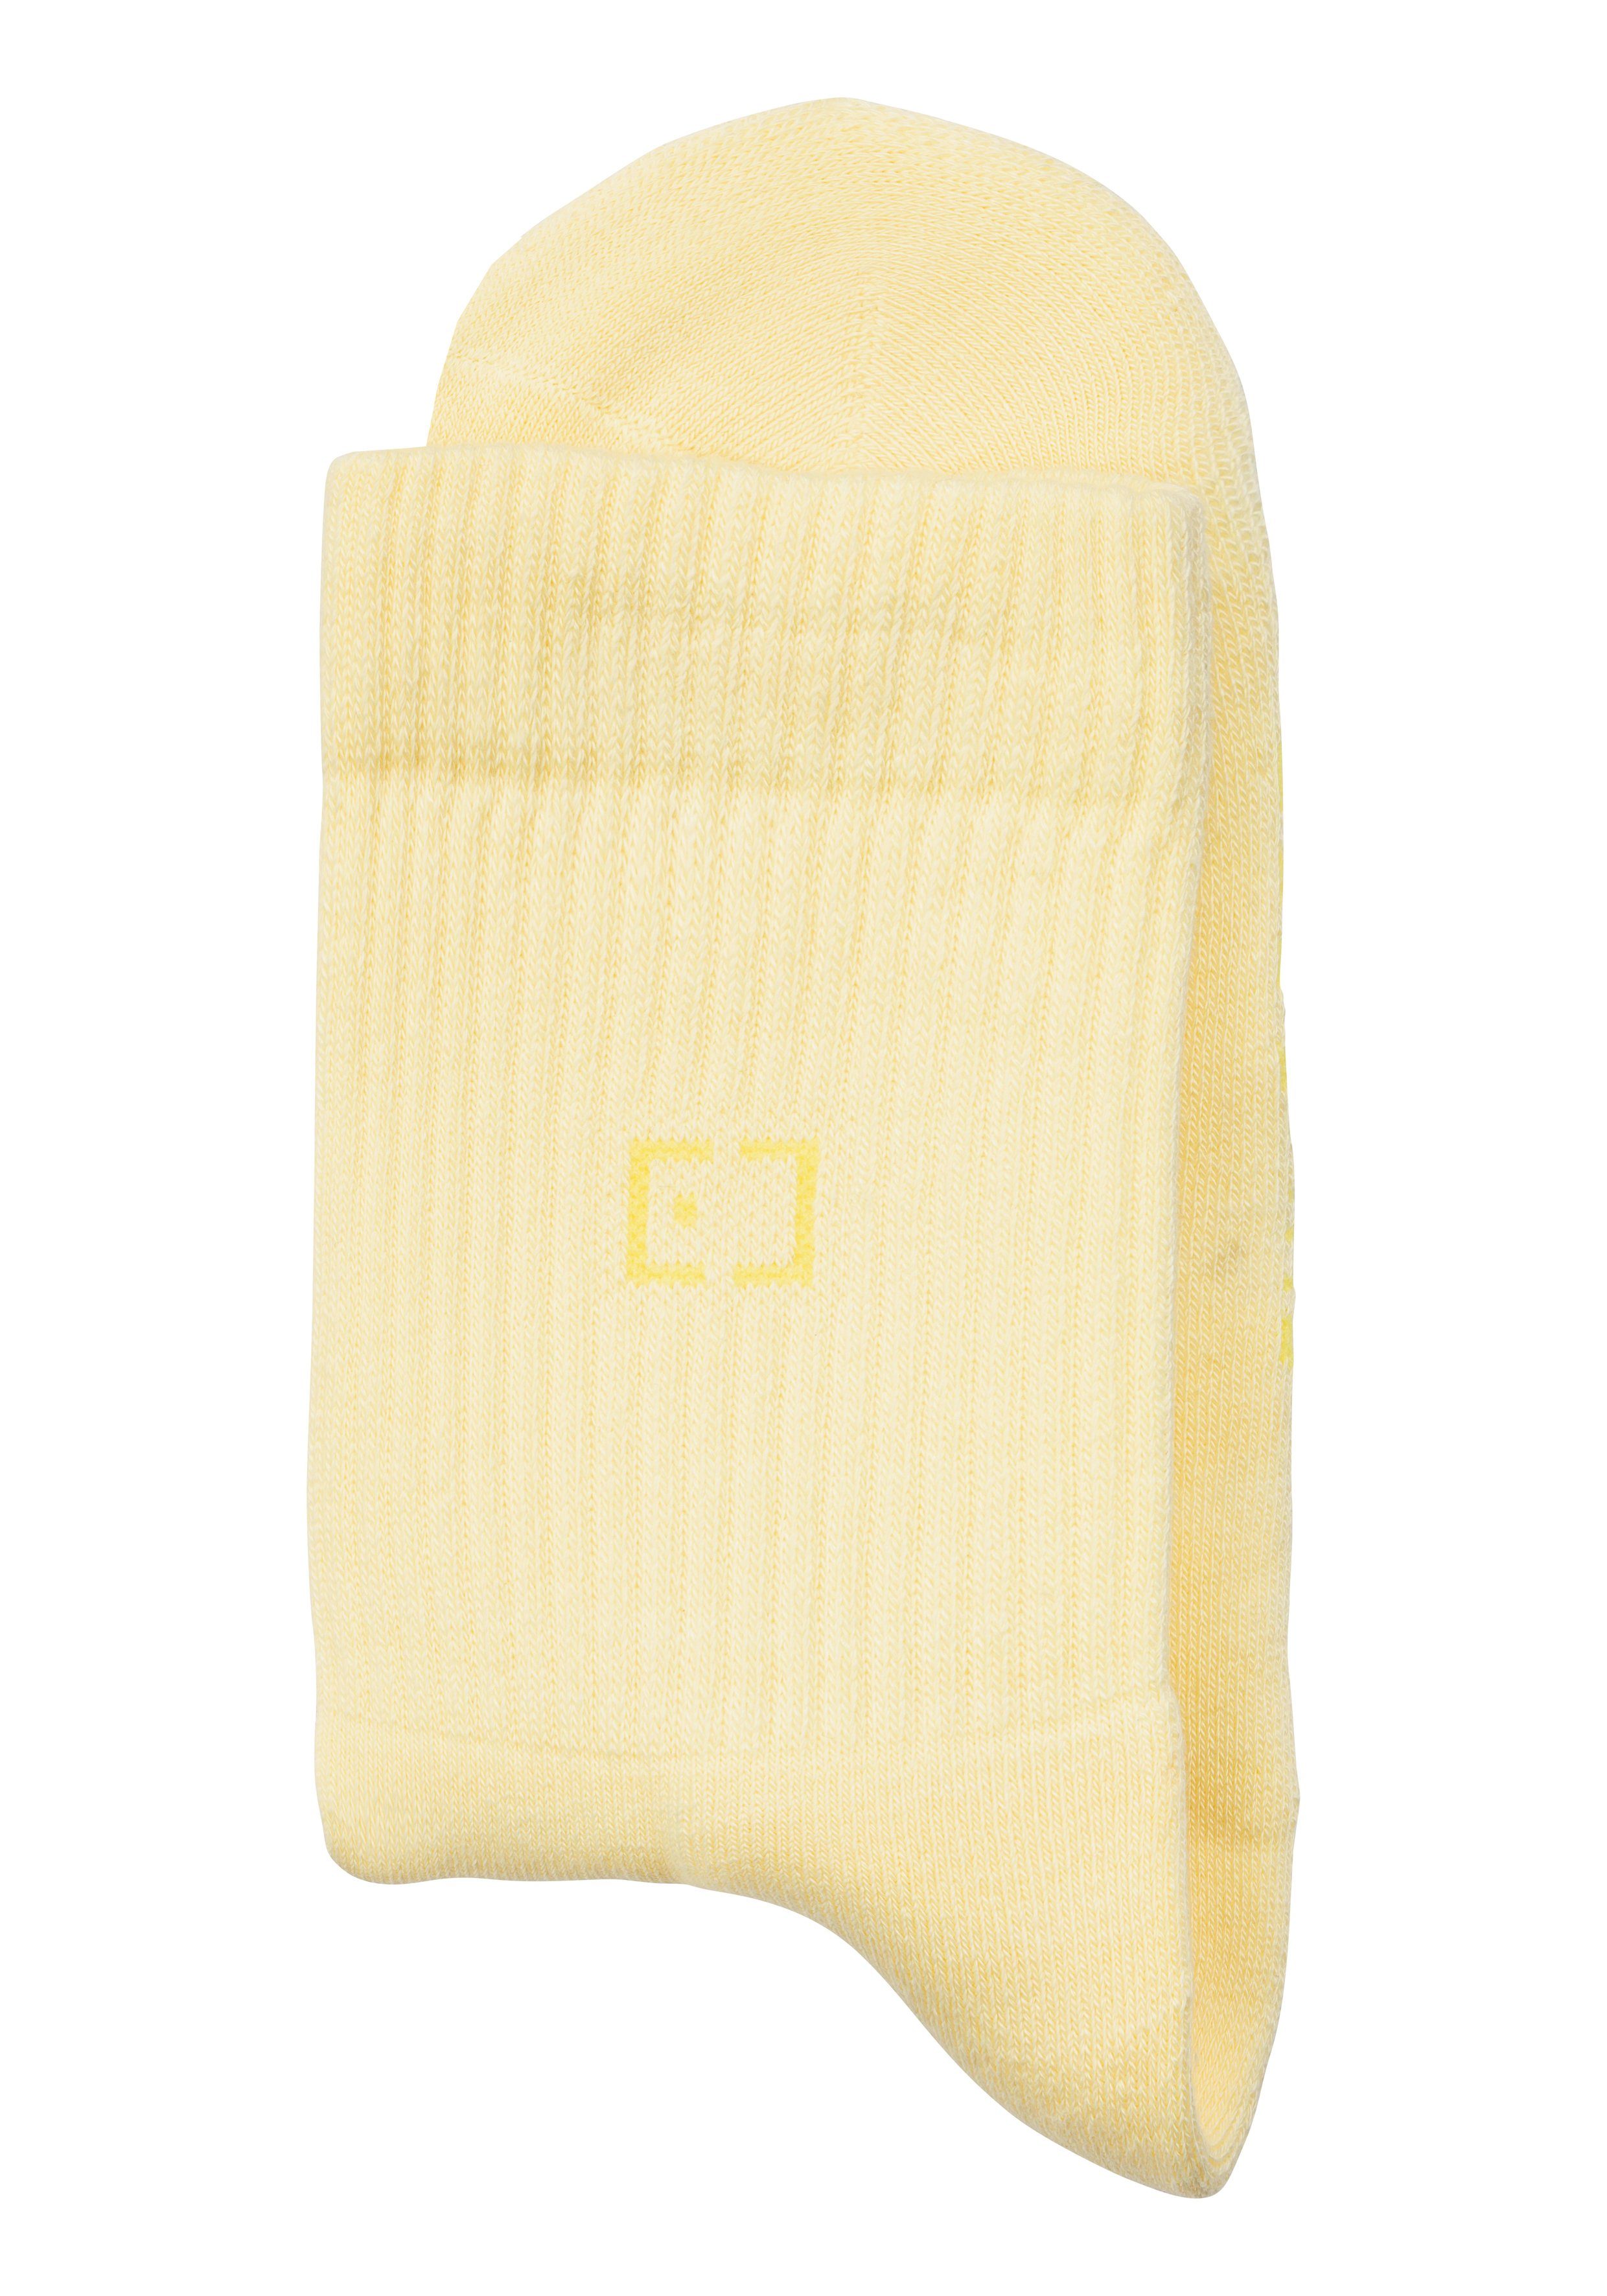 Socken eingestricktem Elbsand Markenlogo rosa, 1x 1x 1x Schriftzug apricot, (3-Paar) mit gelb und